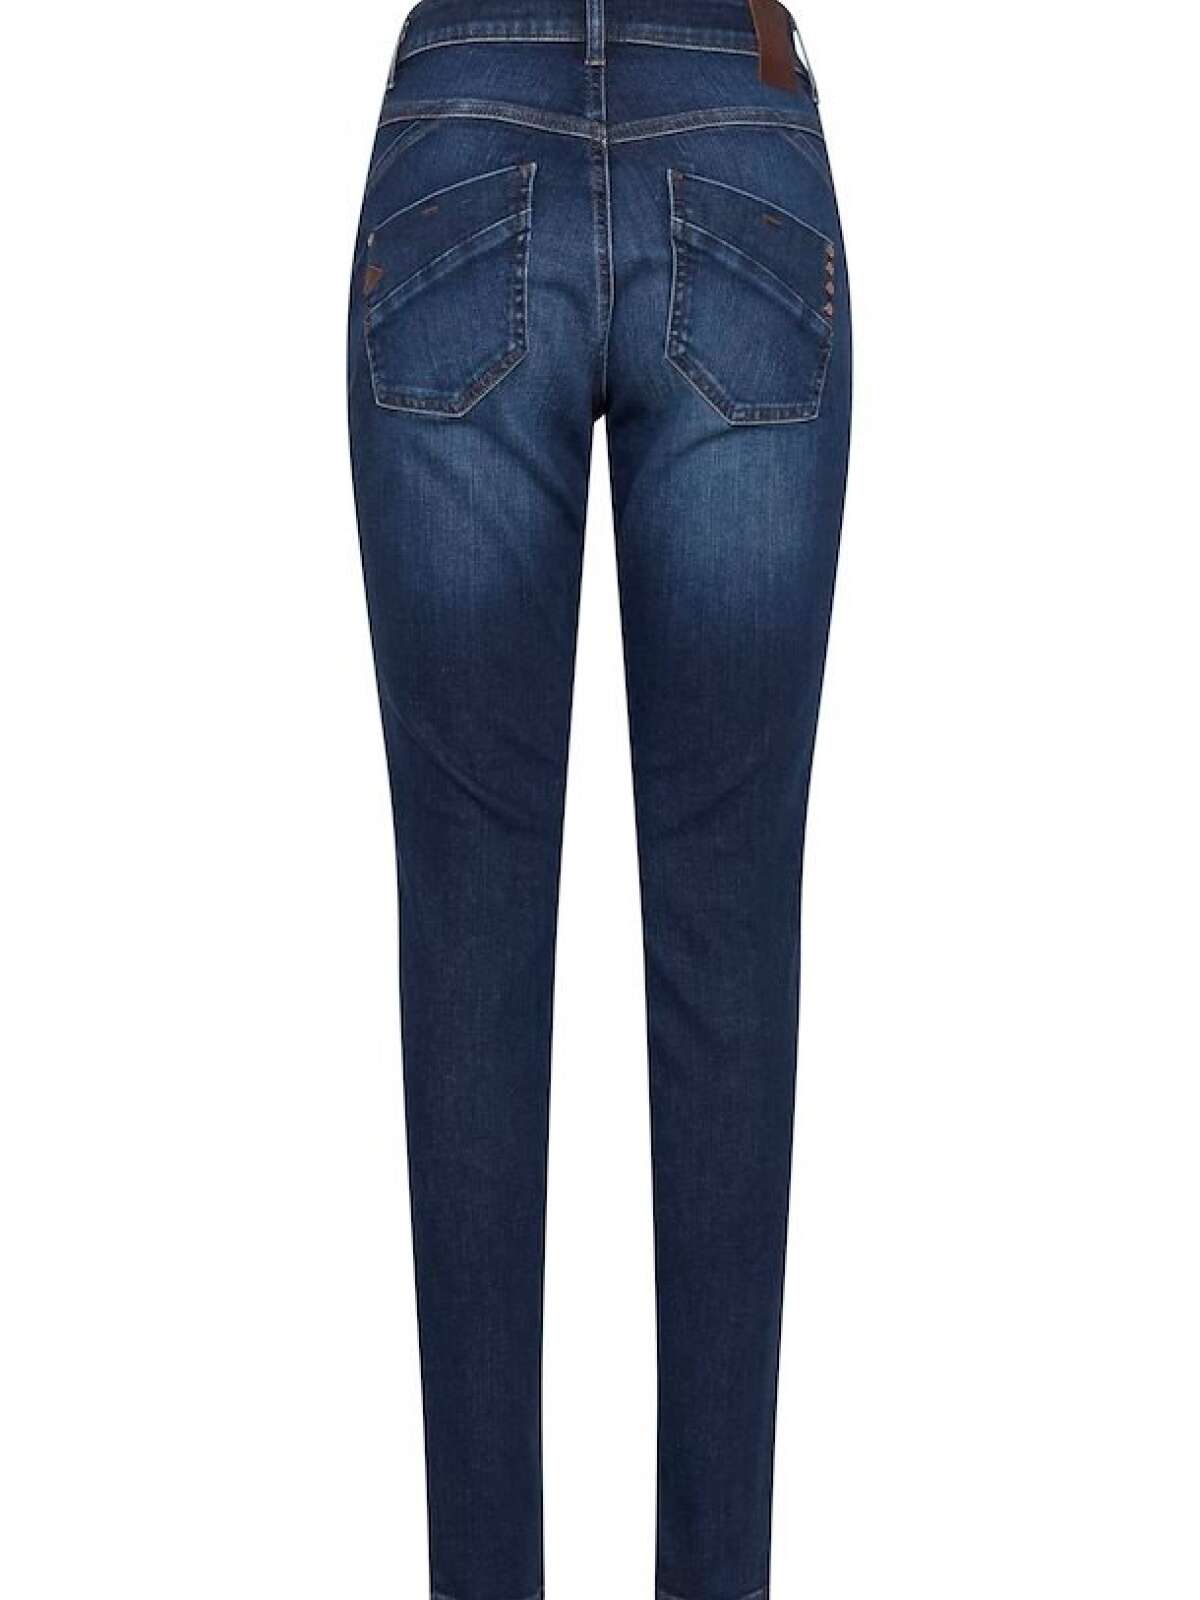 tweet Cafe forslag Emma jeans | Pulz jeans | Shop her >>